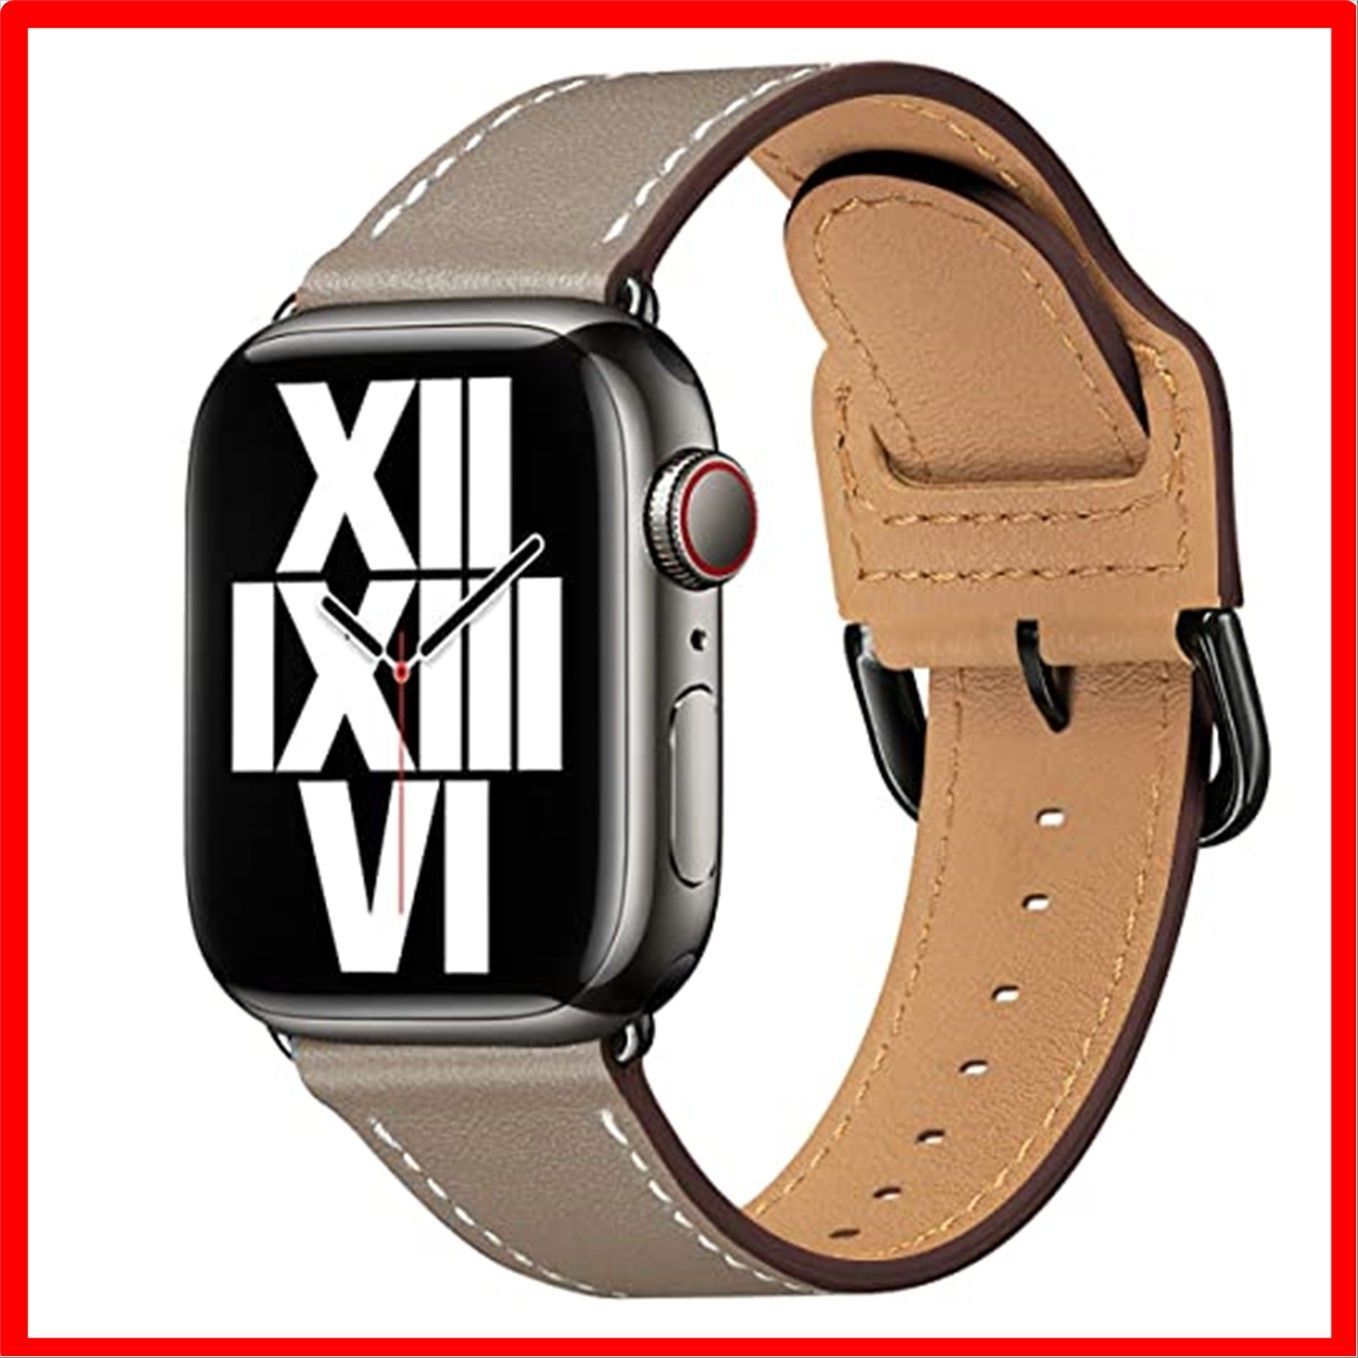 特別価格 新品送料無料 Apple Watch バンド ベルト シルバー 38 40mm